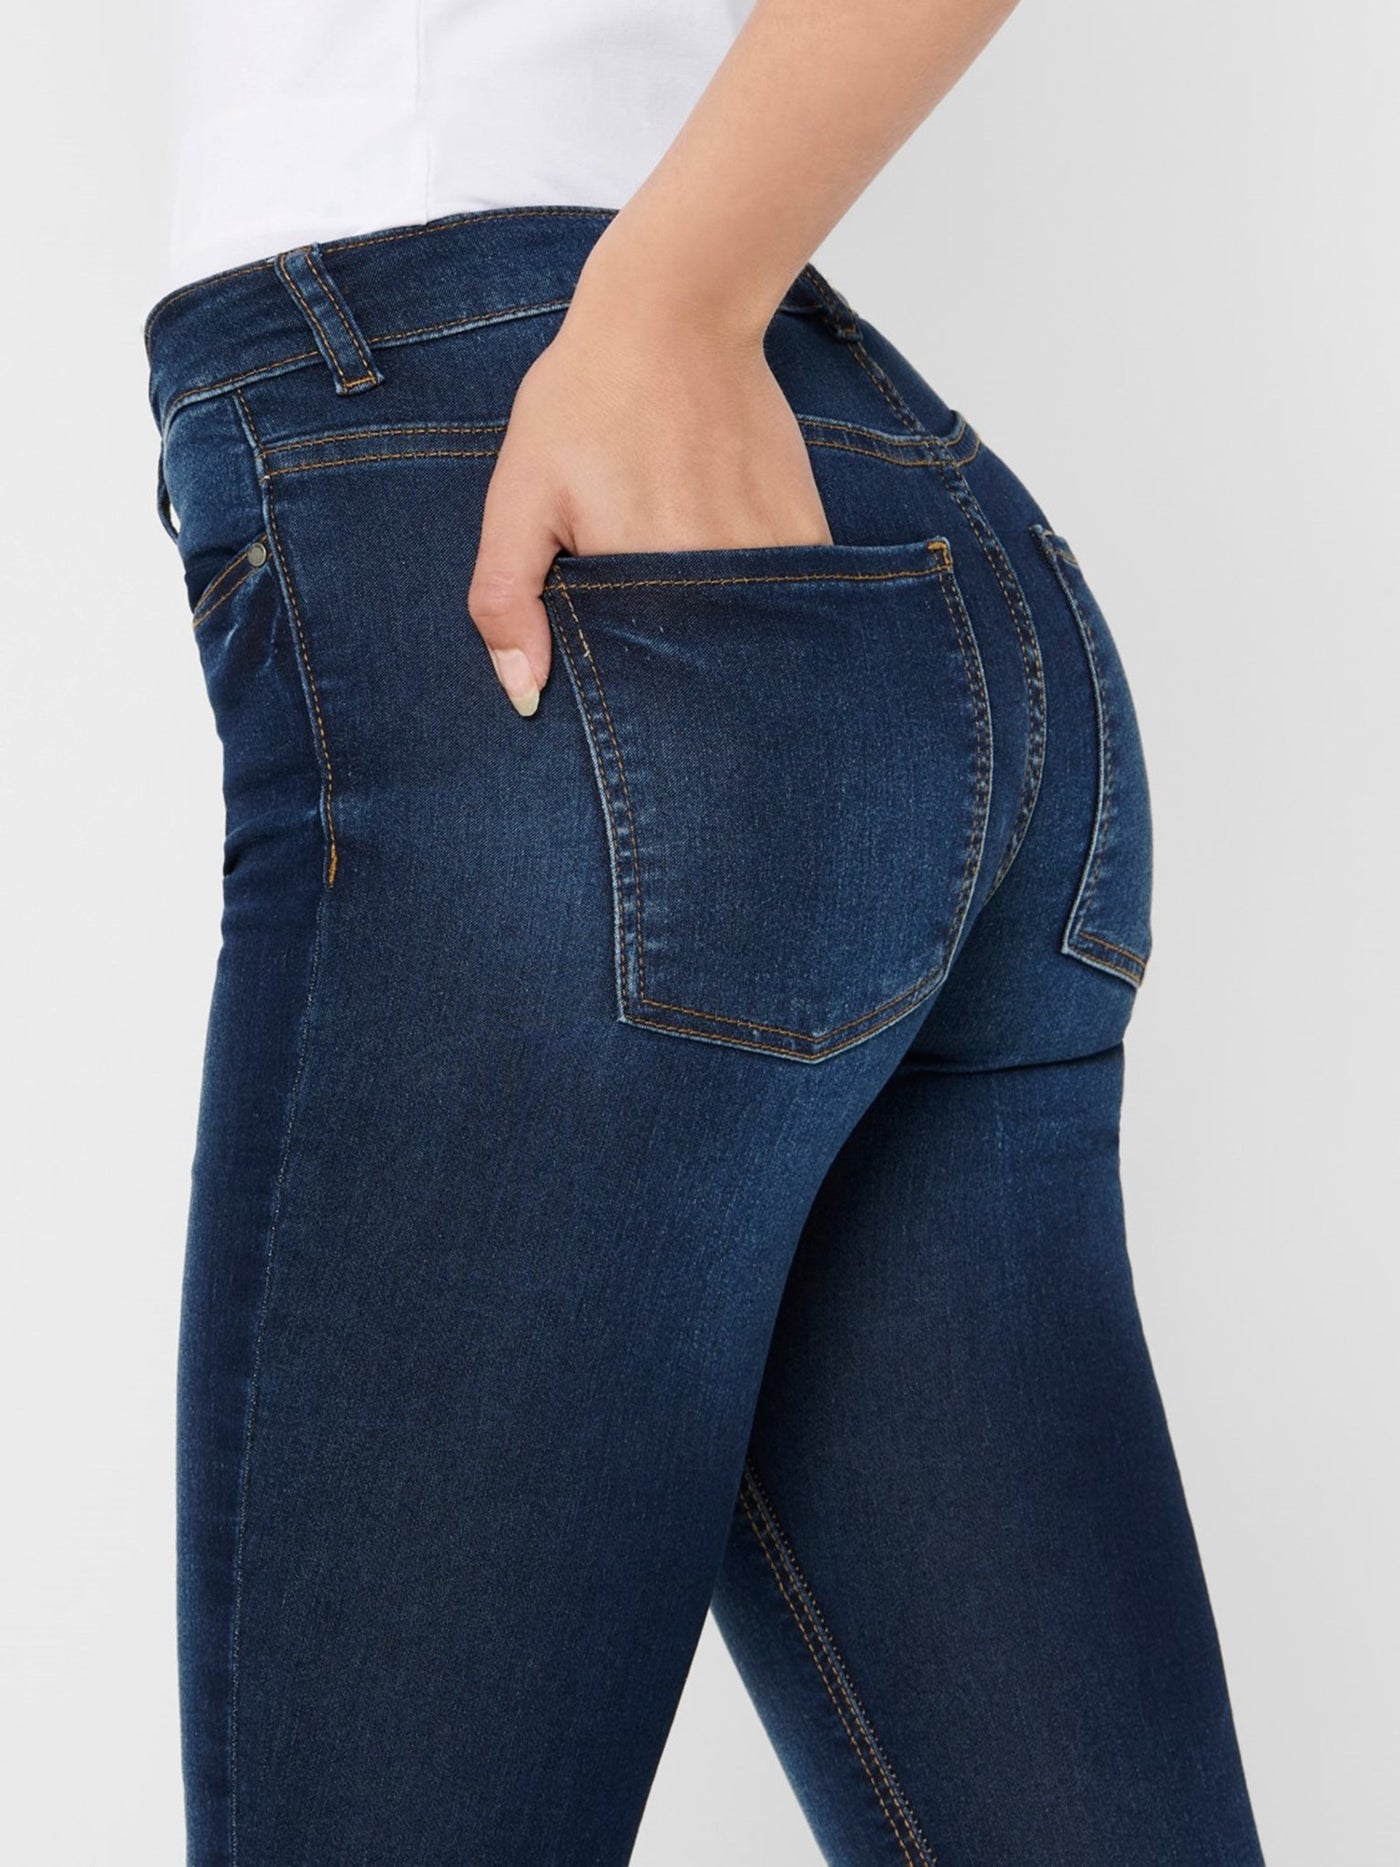 Performance Jeans - Blue denim (mid-waist) - Jacqueline de Yong - Blue 6